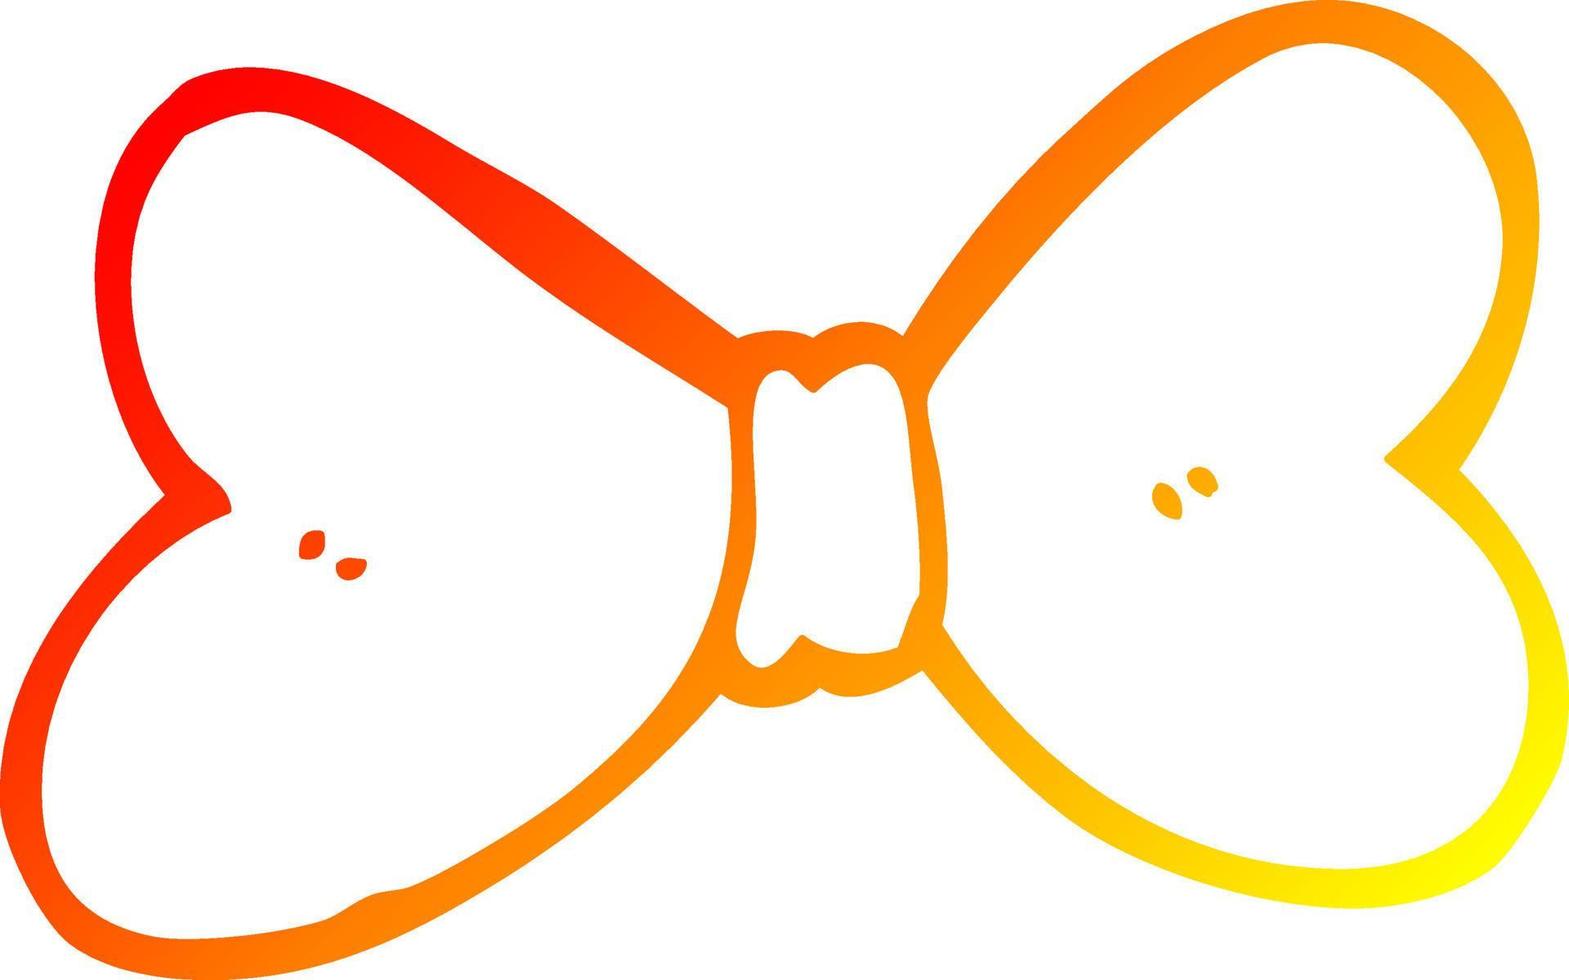 ligne de gradient chaud dessinant un noeud papillon de dessin animé vecteur